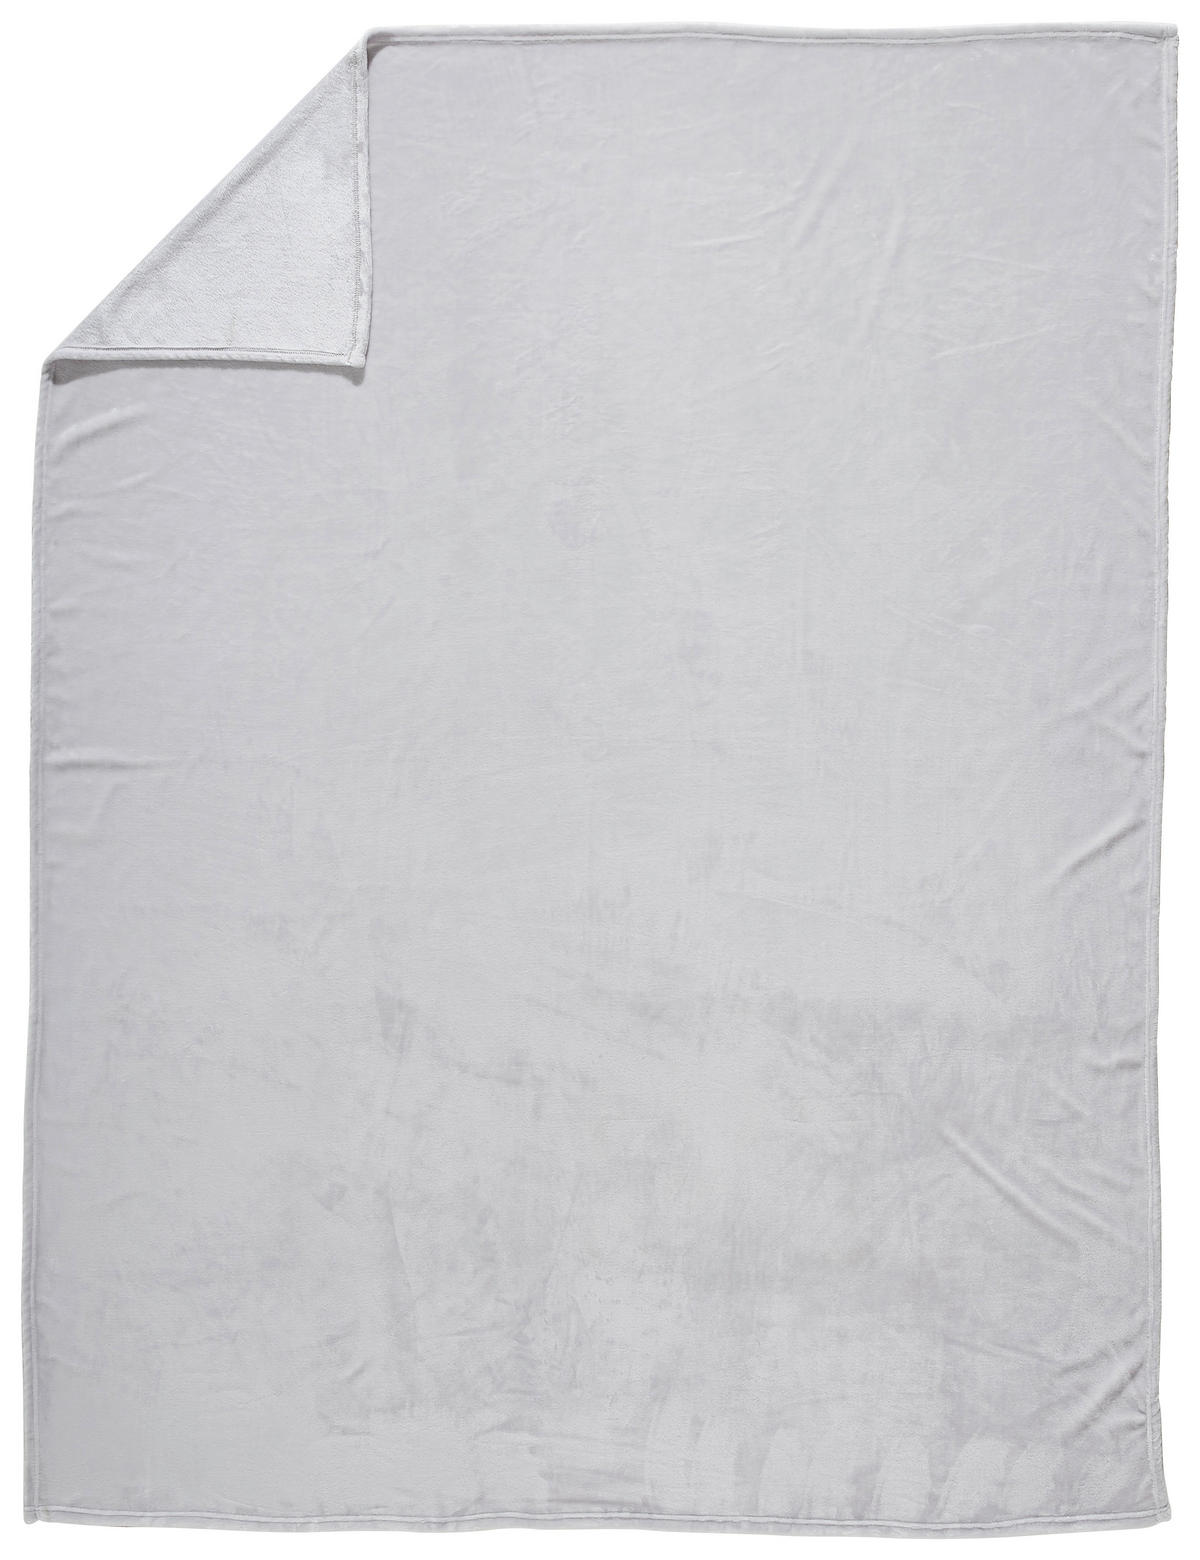 Wohndecke 140x190 cm aus Polyester in Silberfarben | Mitteldecken